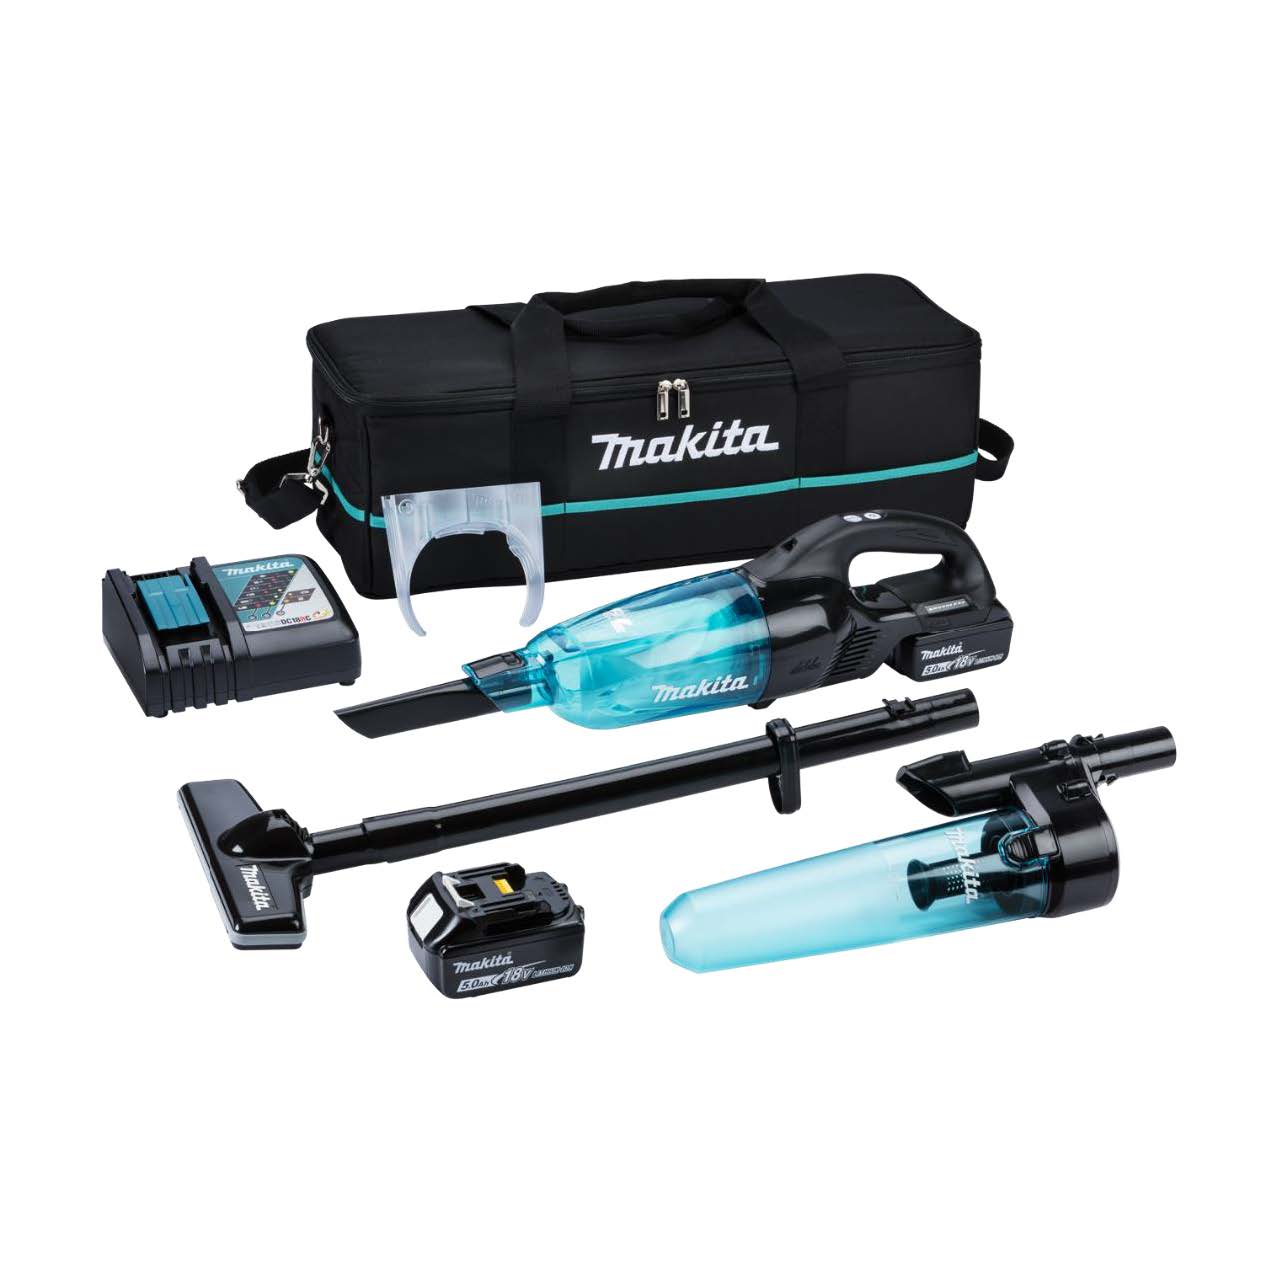 Makita DCL281 18V Brushless Vacuum Cleaner (Blue/Black) - Free Promo Kit